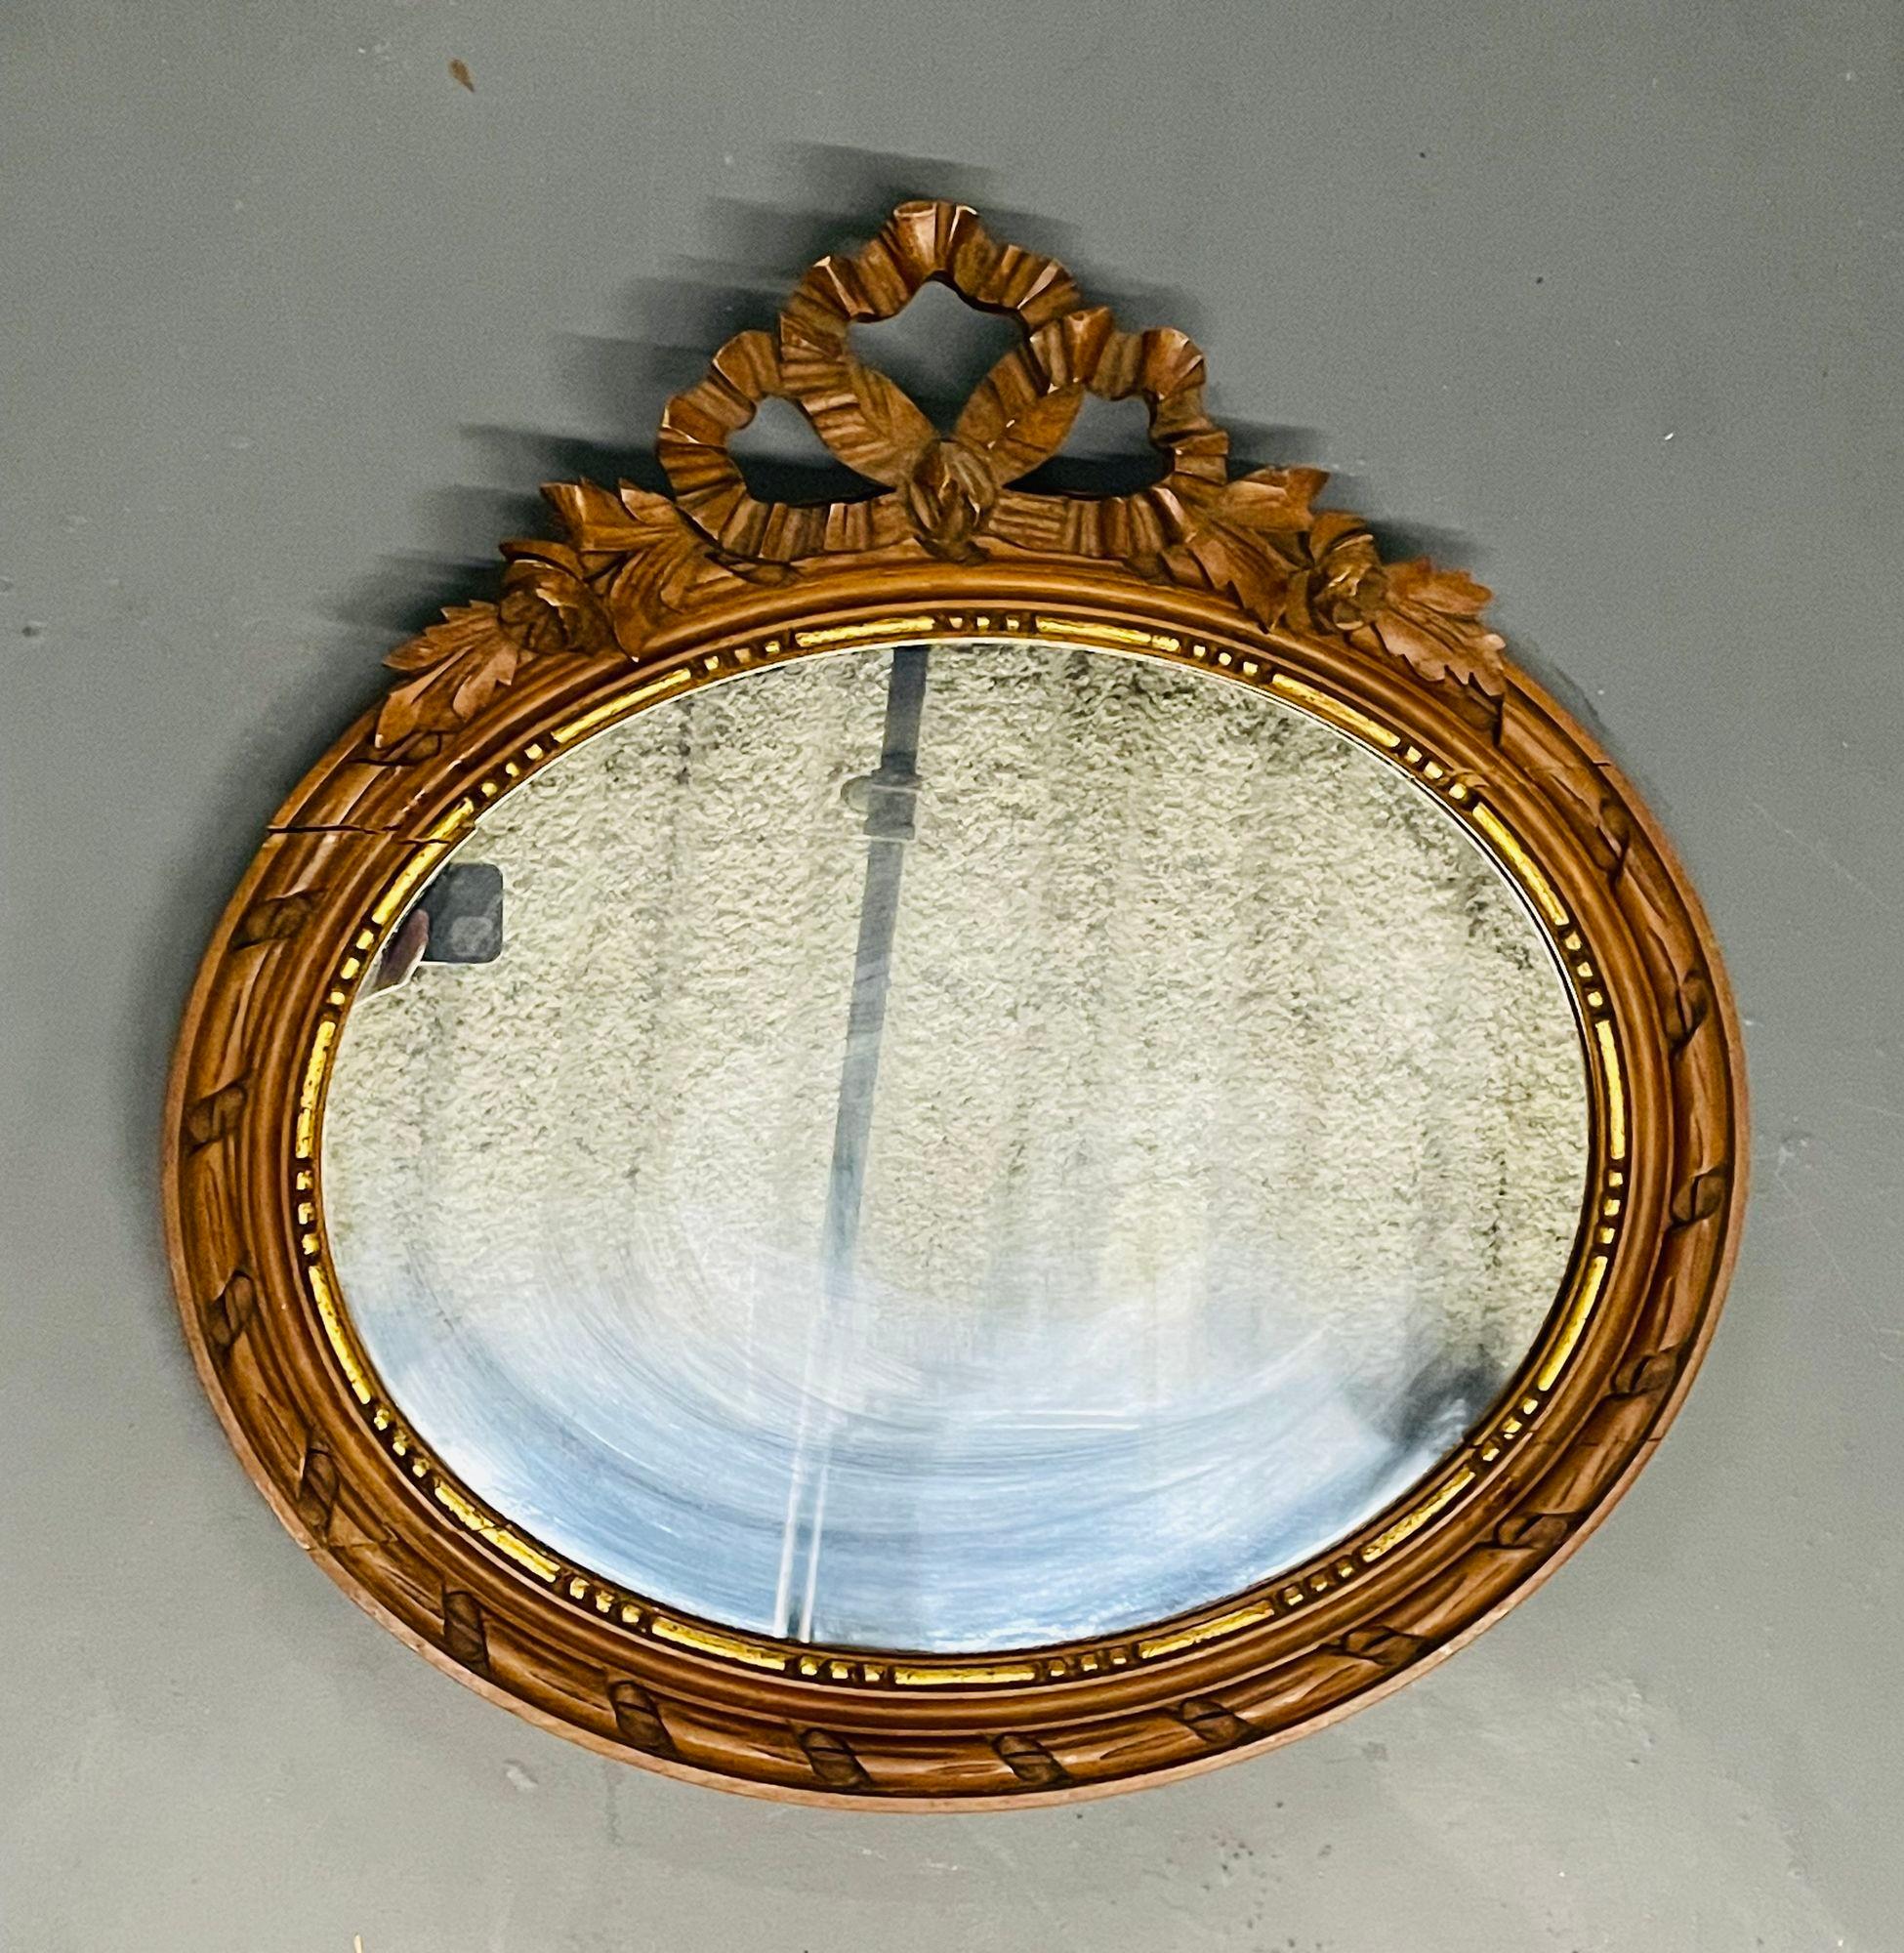 Miroir mural ou console en bois doré de style Louis XVI
Miroir mural ovale en bois doré de style français. Le panneau central du miroir est encadré d'un cadre doré se terminant par un ruban avec un nœud et un motif floral. 
23,5H x 24W